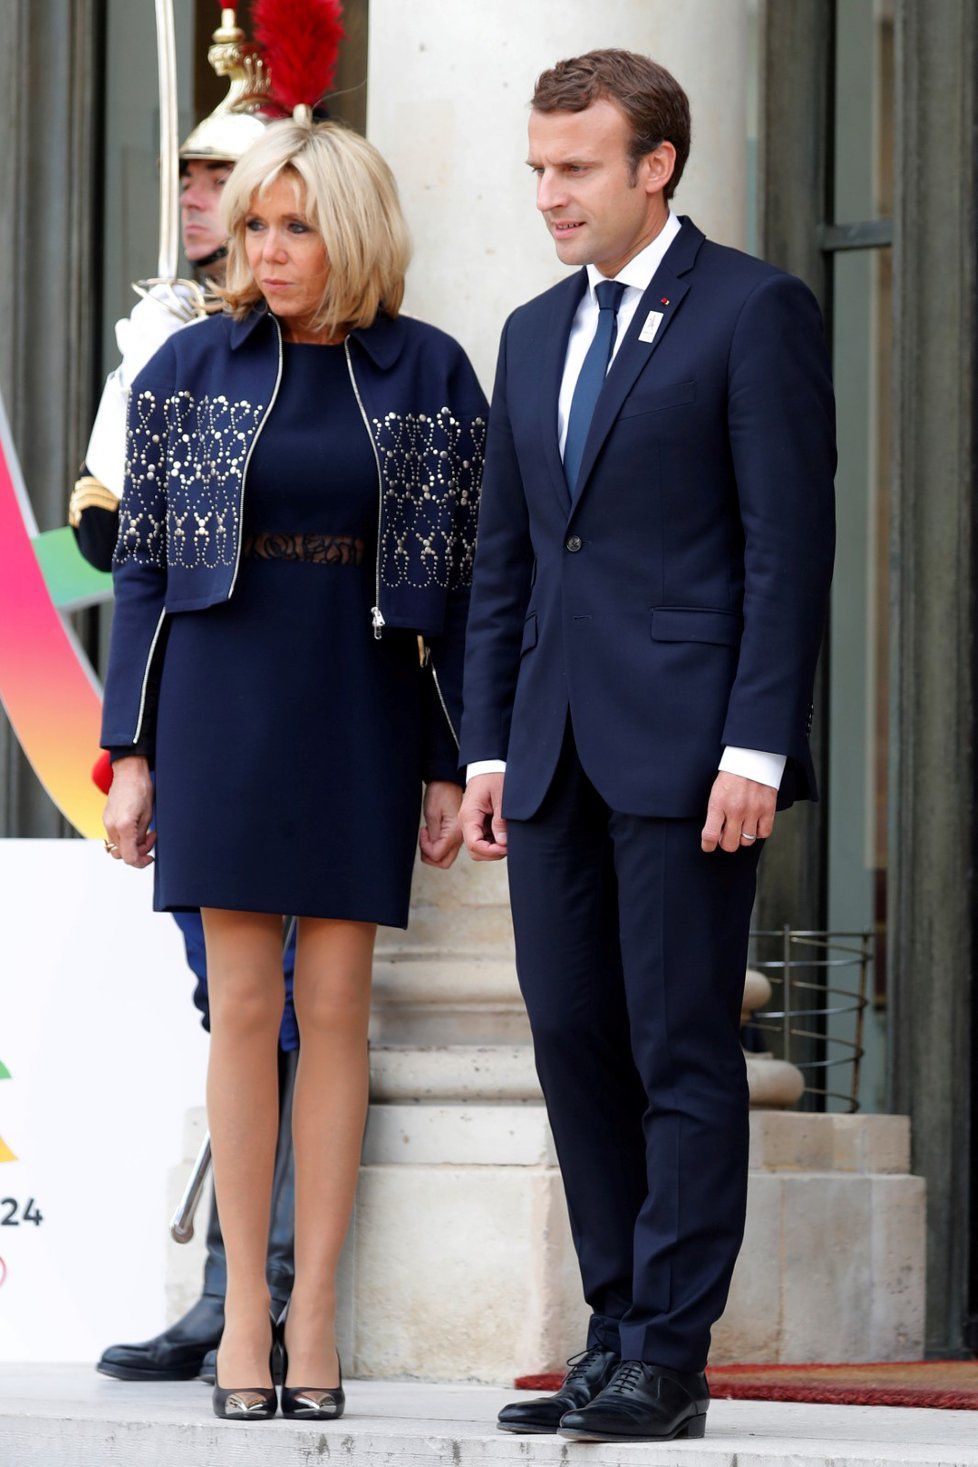 Krátkými šaty je první dáma Francie Brigitte Macronová pověstná. Její věk, 64 let, by jí hádal málokdo.